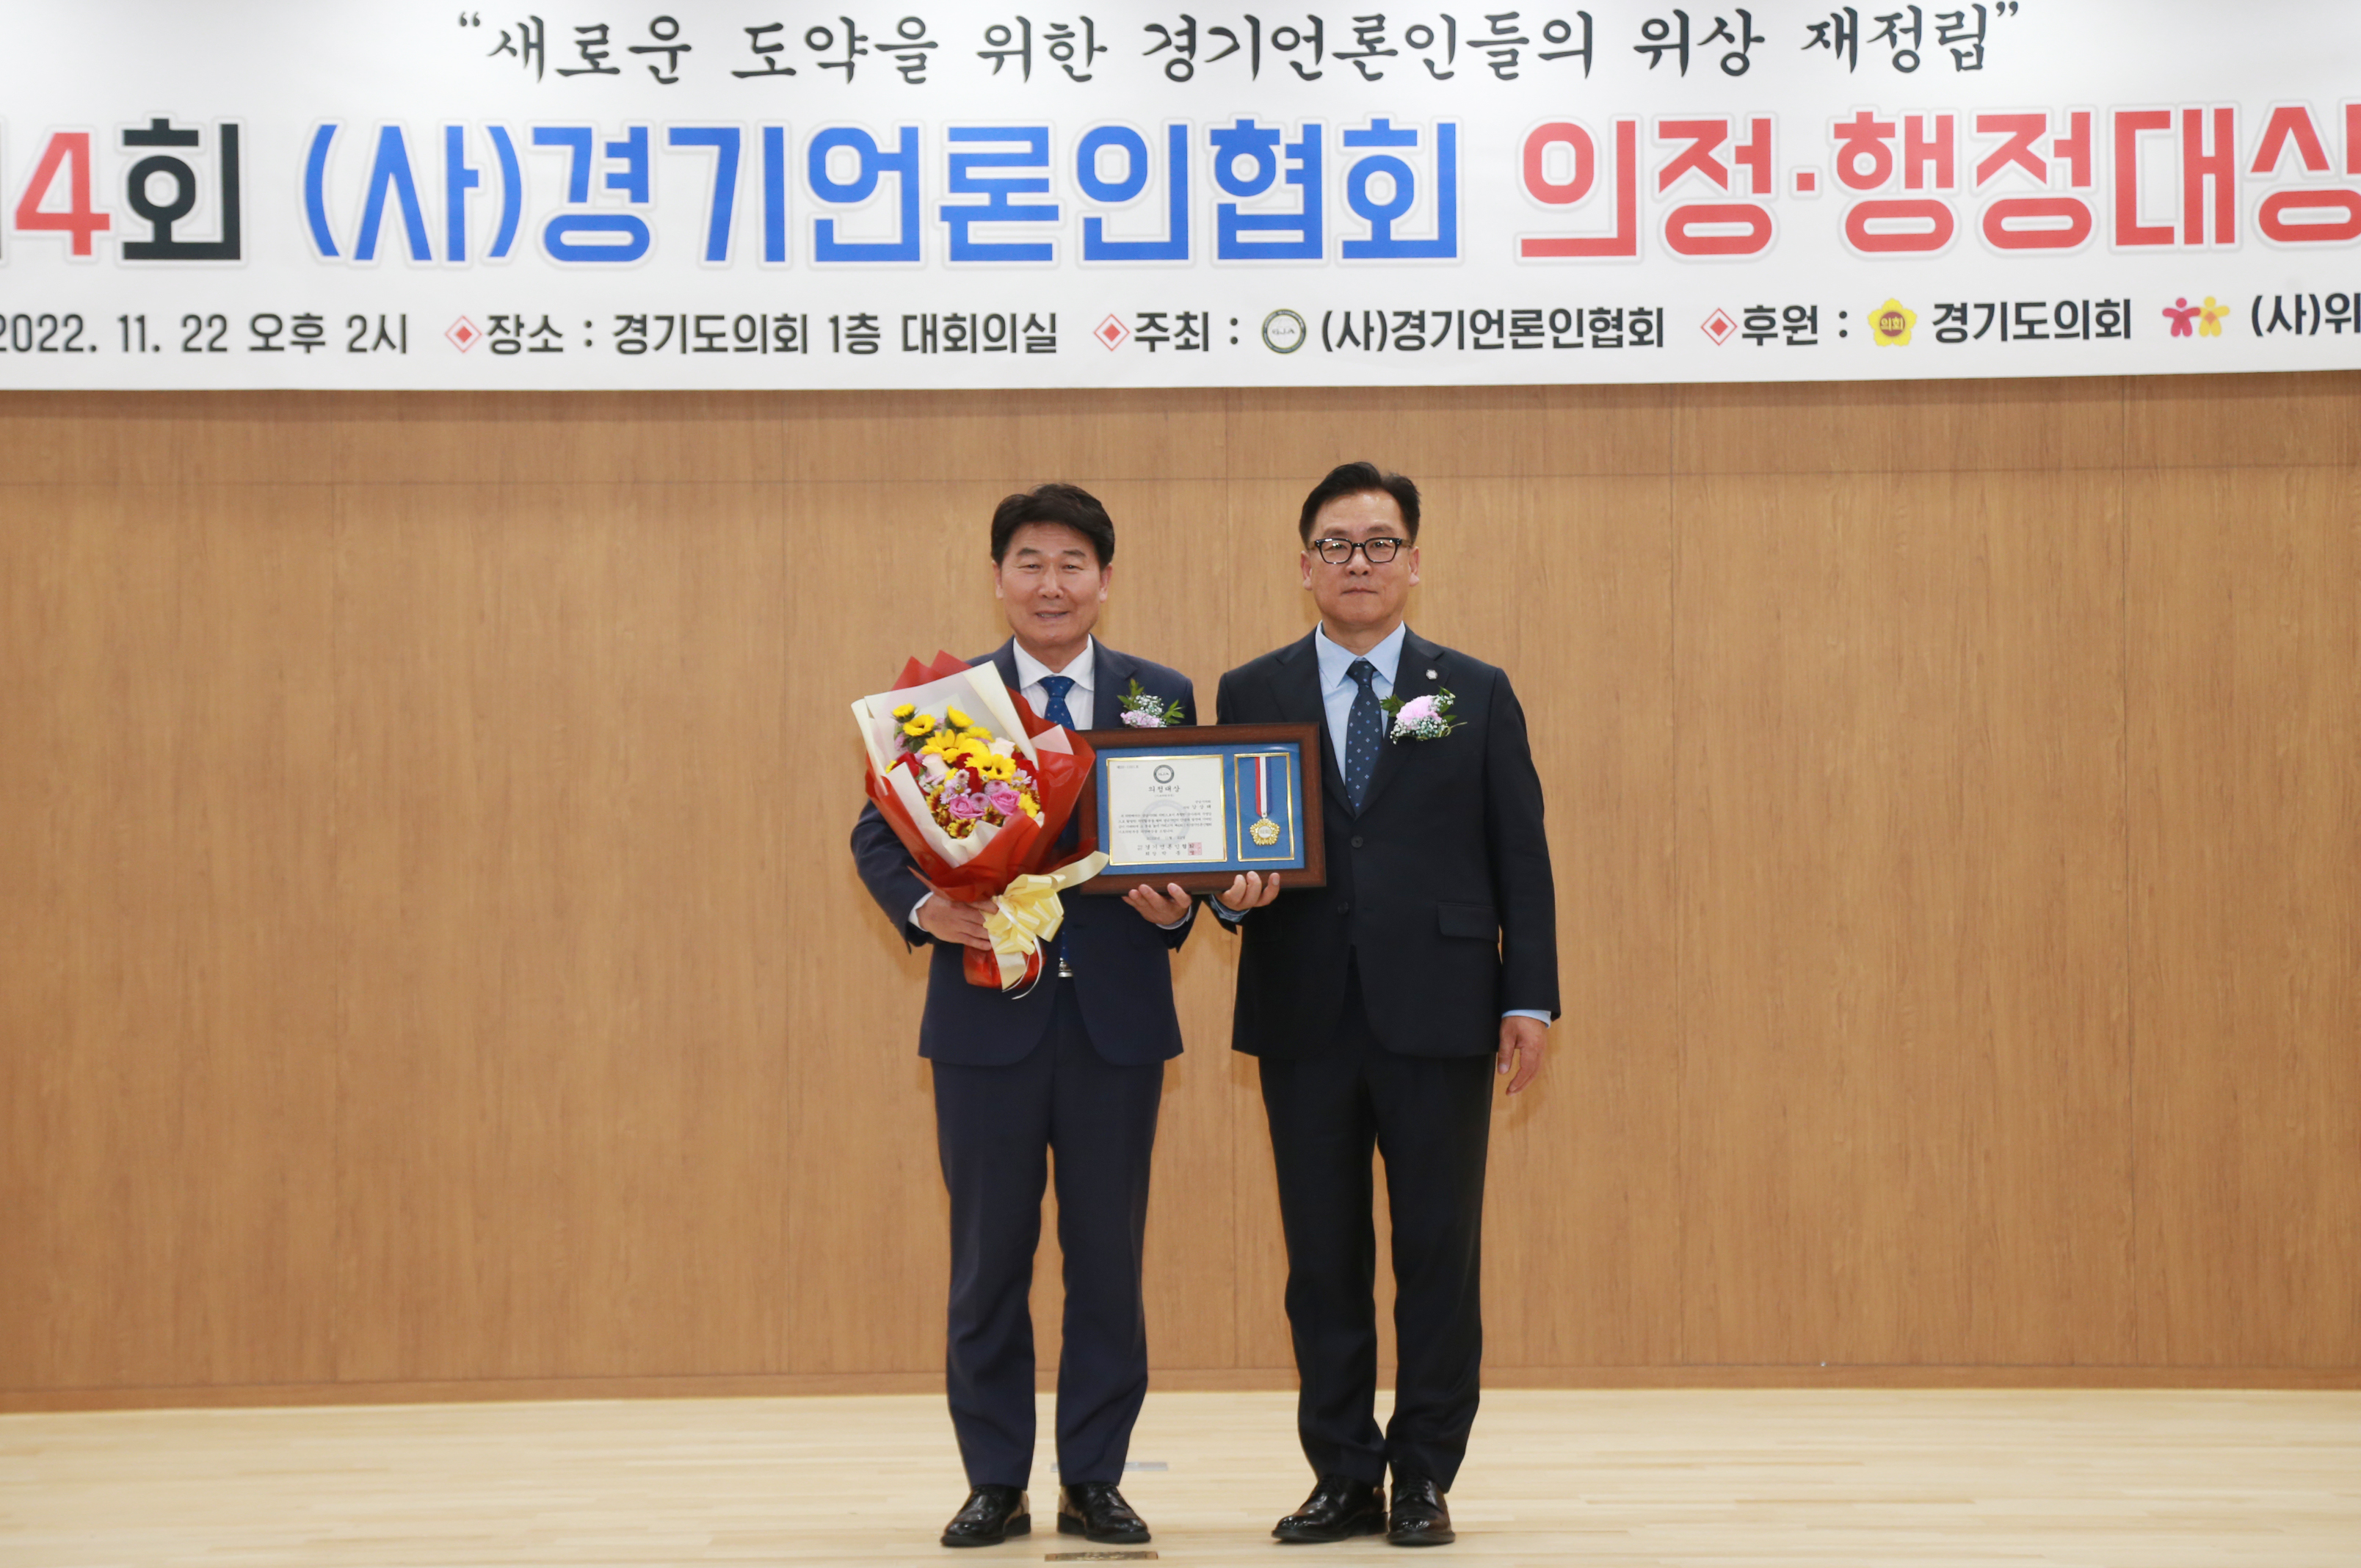 제4회(사)경기언론인협회 의정대상 수상 - 4